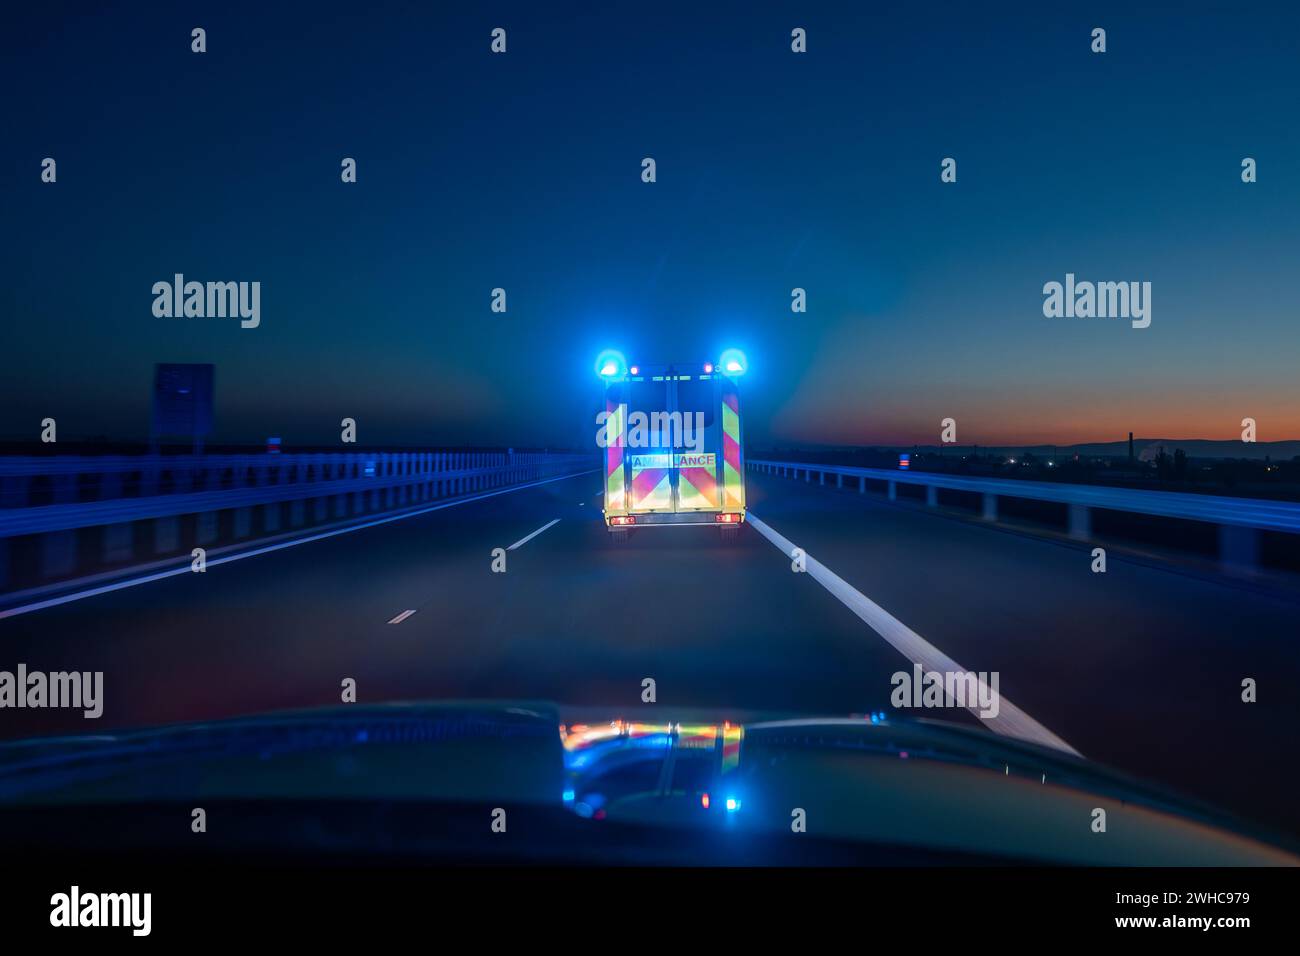 Schnell fahrender Krankenwagen des medizinischen Notdienstes auf der Autobahn in der Nacht. Themen Gesundheit, Rettung und Dringlichkeit. Stockfoto